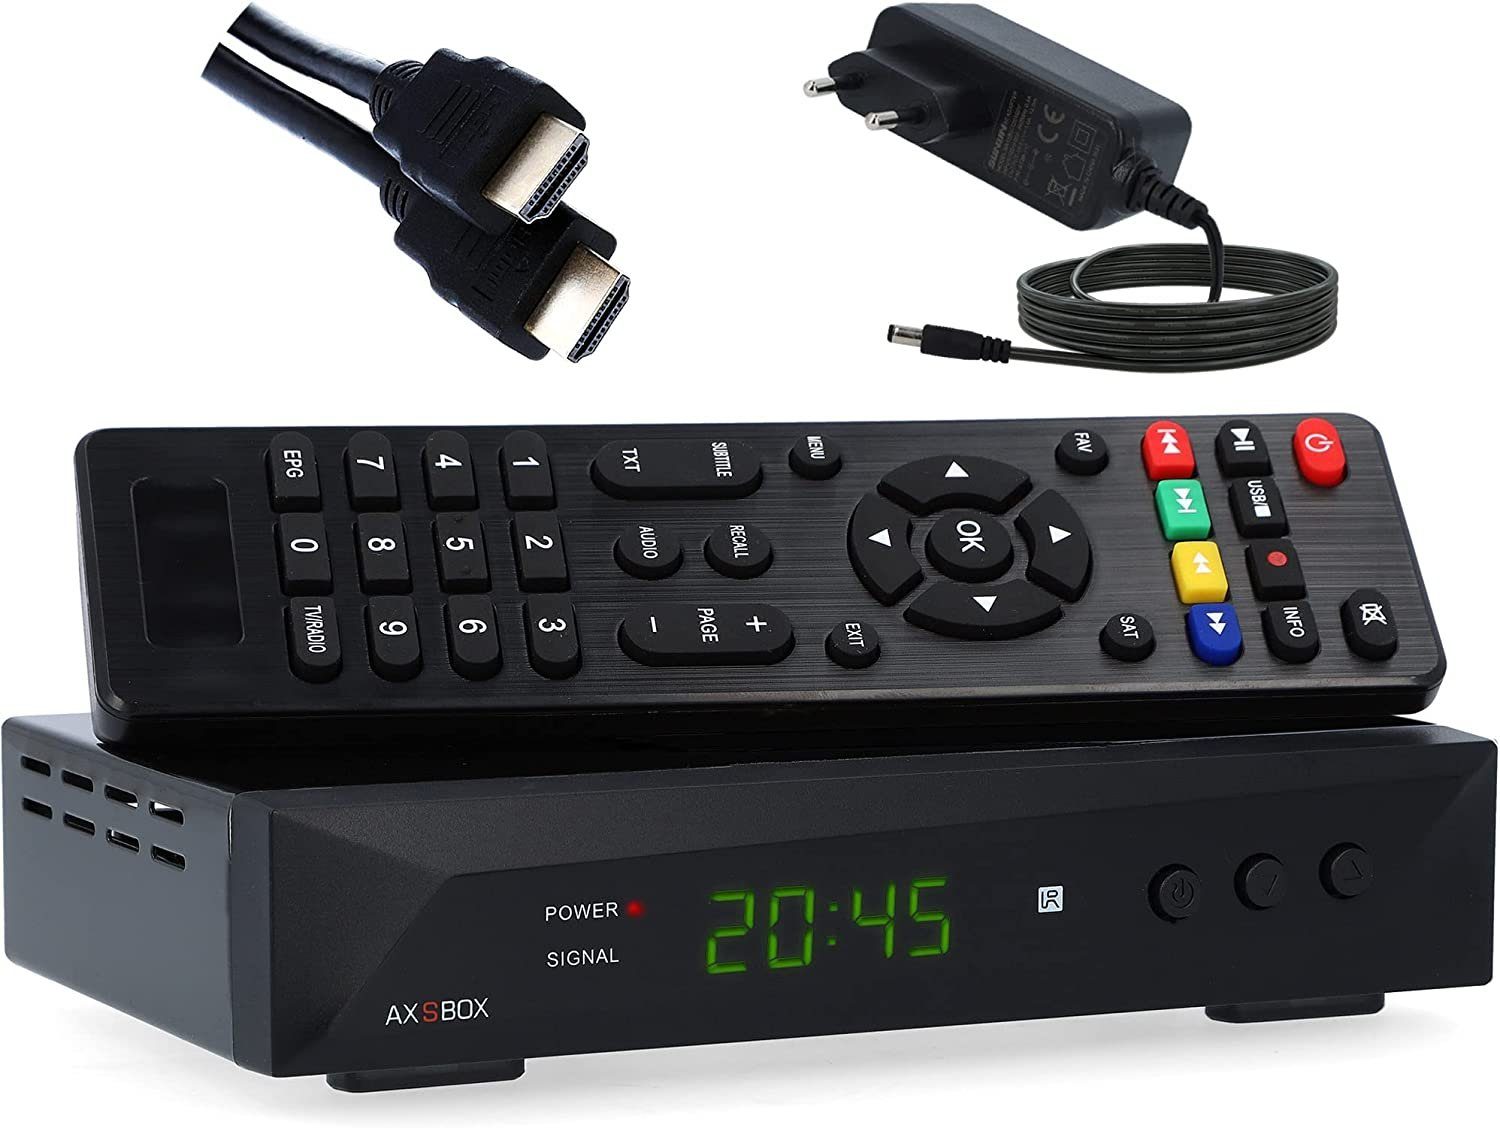 RED OPTICUM SBOX mit PVR + HDMI Kabel SAT-Receiver (PVR, HDMI, SCART, USB, Coaxial - Timeshift & Einkabel tauglich)